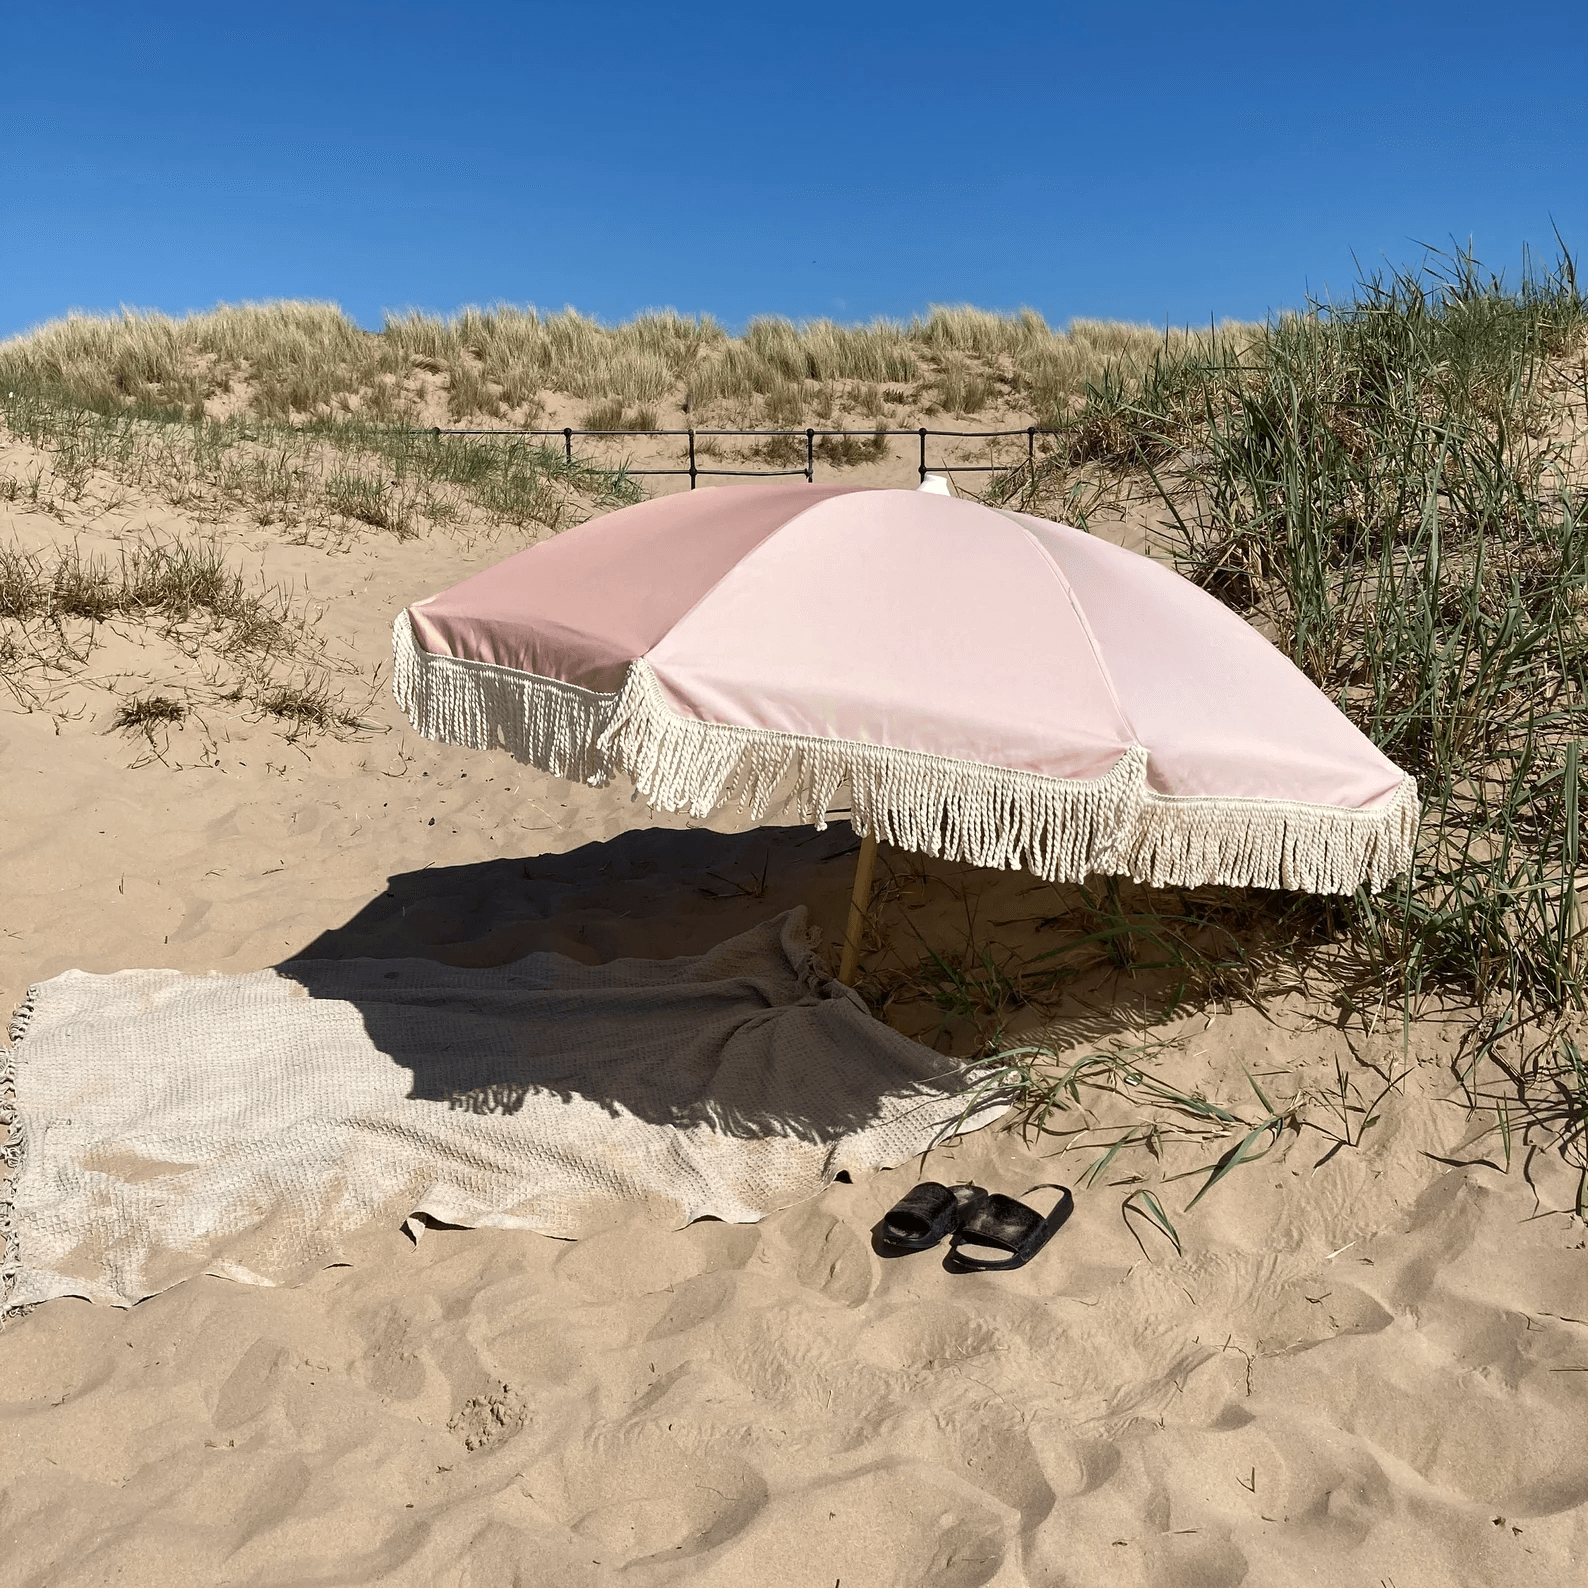 Beige tones panelled neutral sun parasol image beach